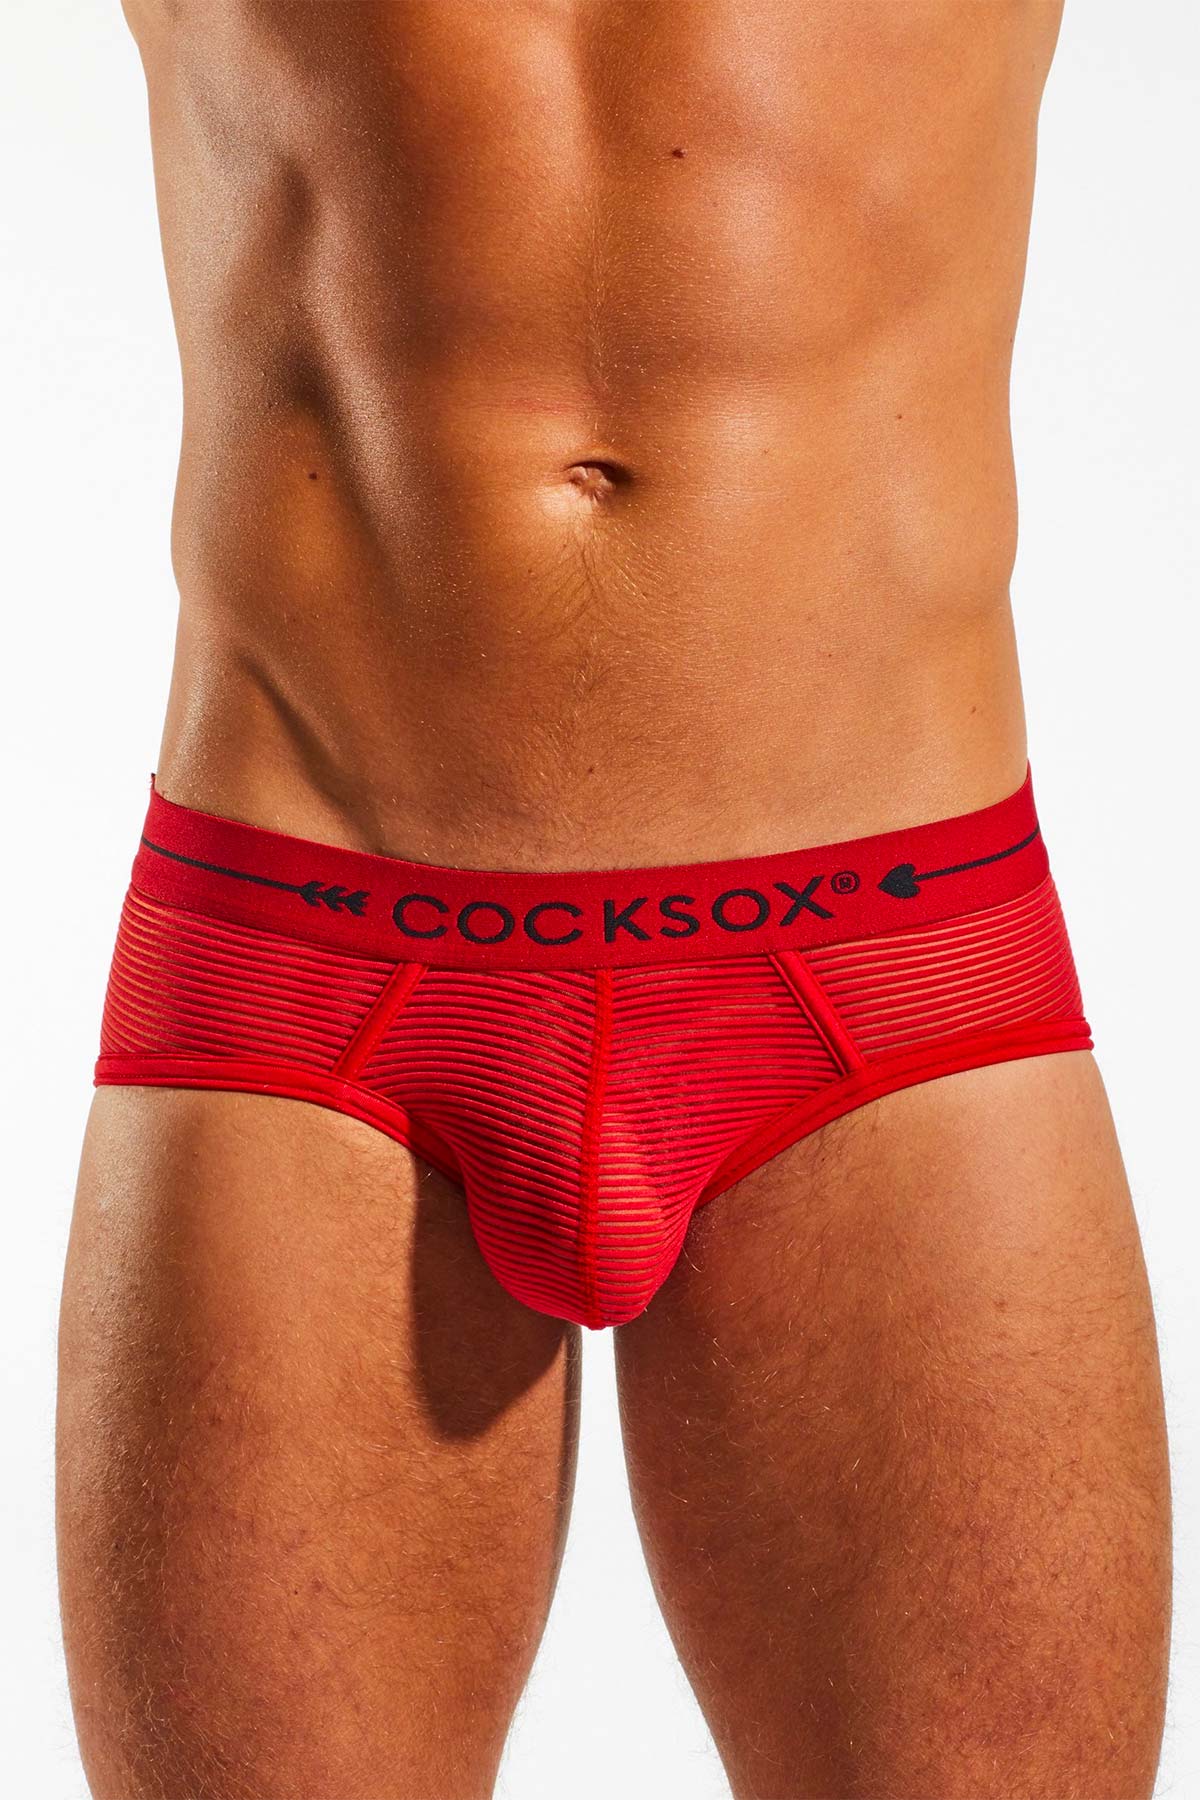 Shop-Cocksox Underwear CX76SH Sheer Sports Brief-MensUnderwear.io